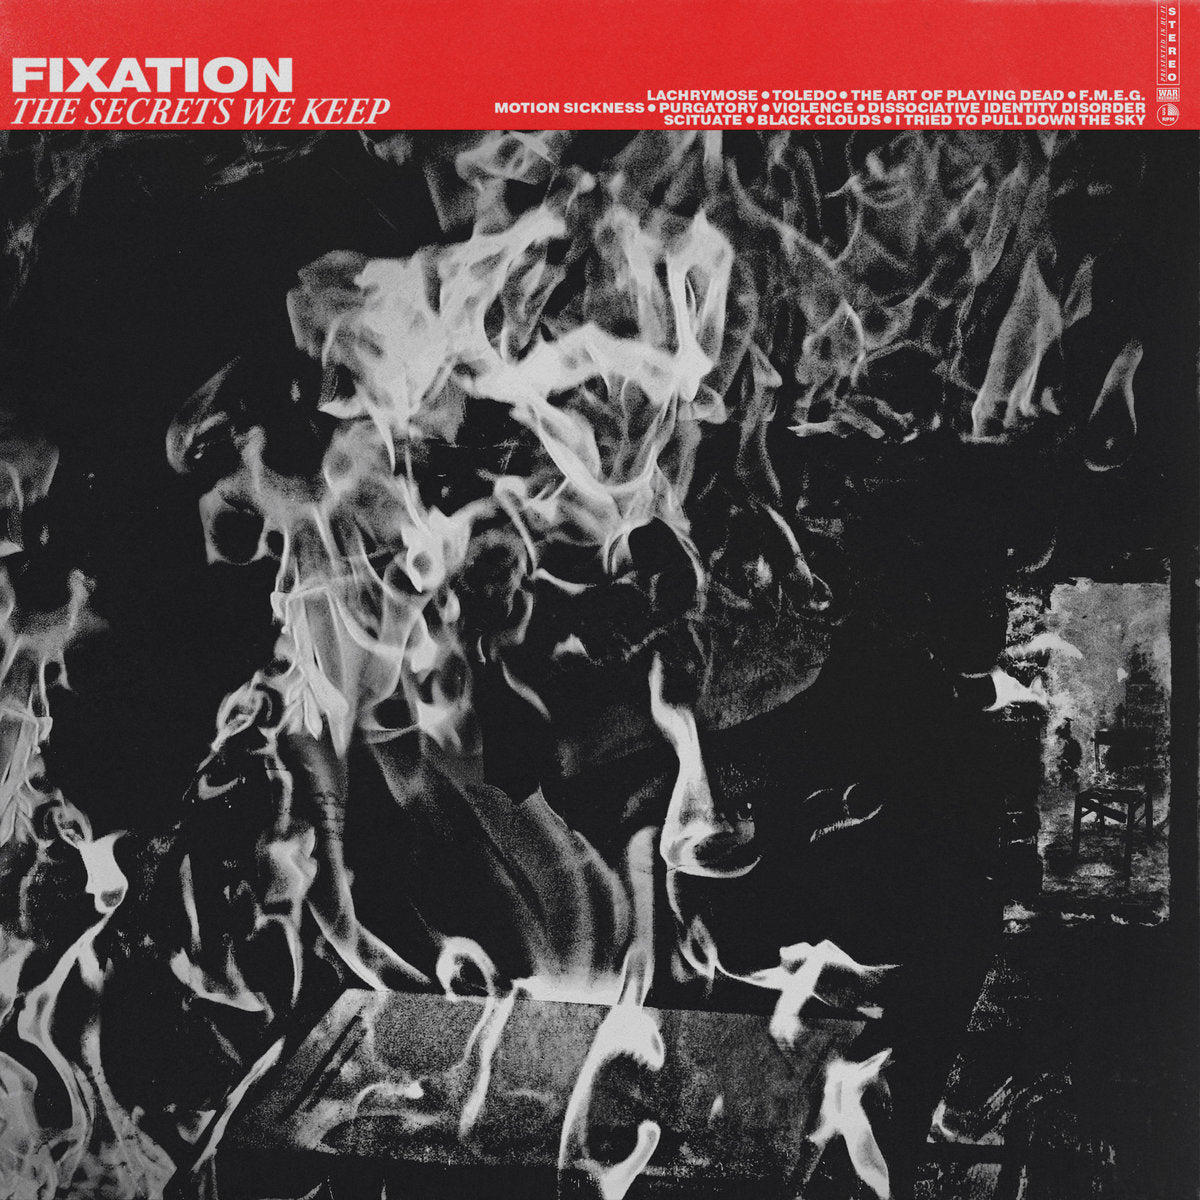 Fixation "The Secrets We Keep" 12" Vinyl